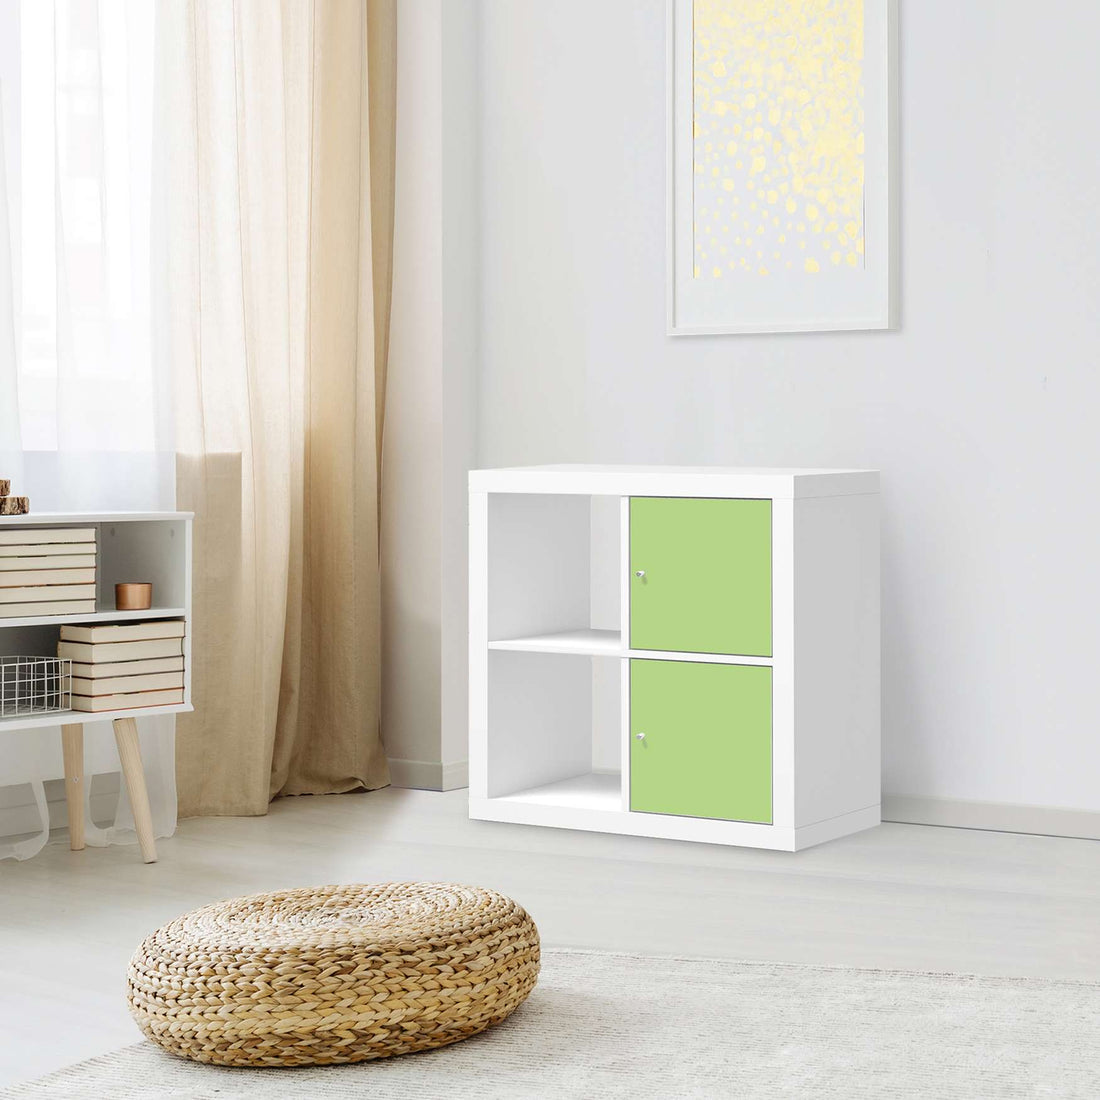 Klebefolie für Möbel Hellgrün Light - IKEA Expedit Regal 2 Türen Hoch - Wohnzimmer